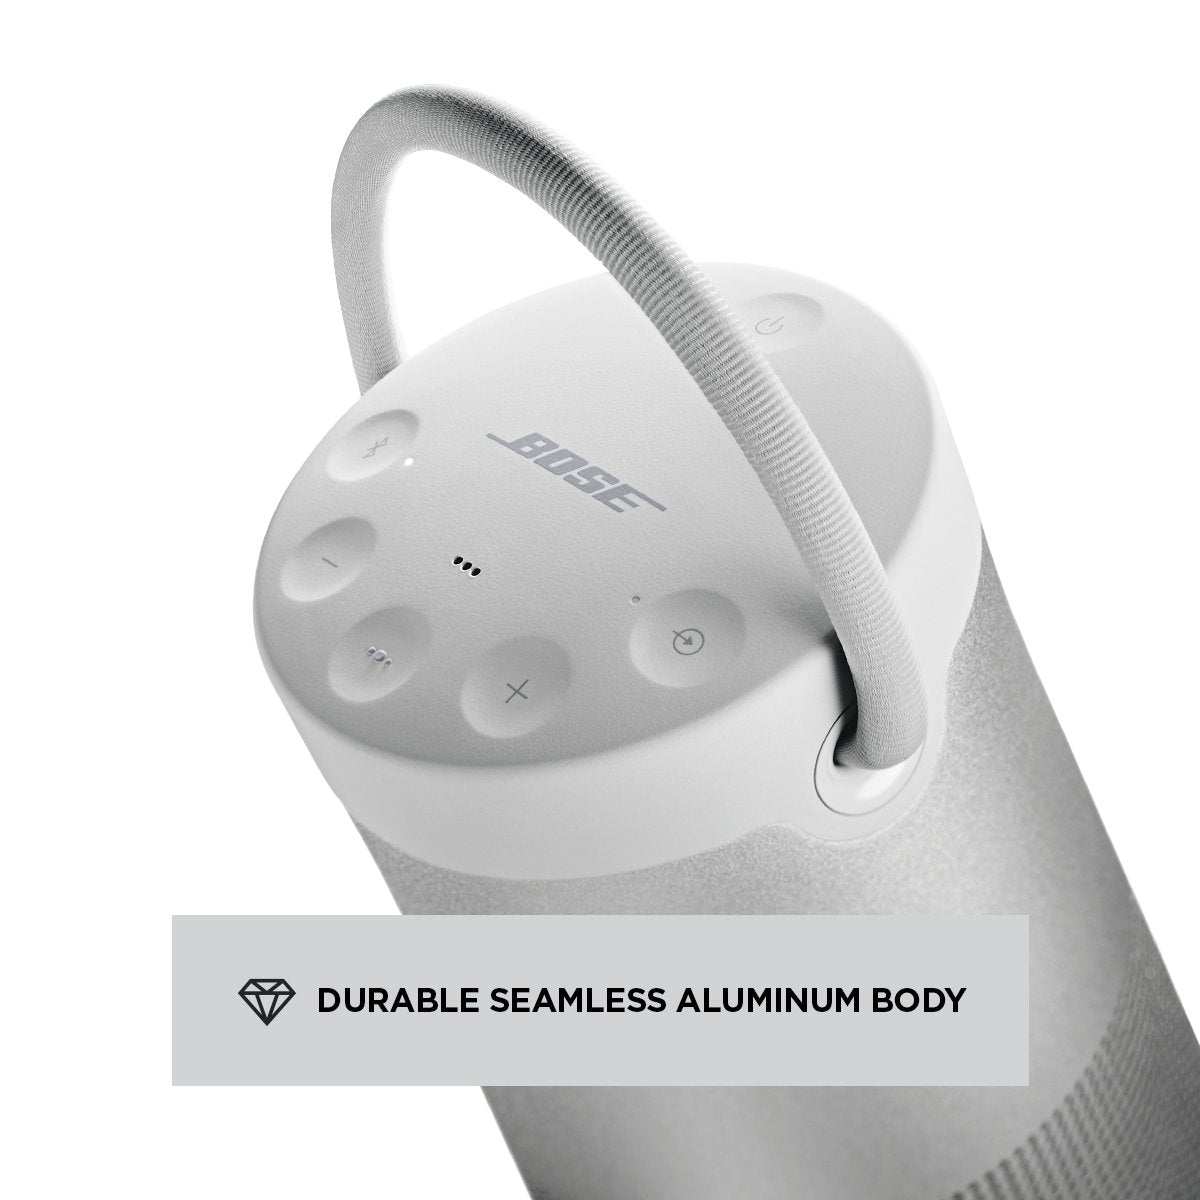 オーディオ機器 スピーカー Bose SoundLink Revolve+(Series II) Portable Bluetooth Speaker 